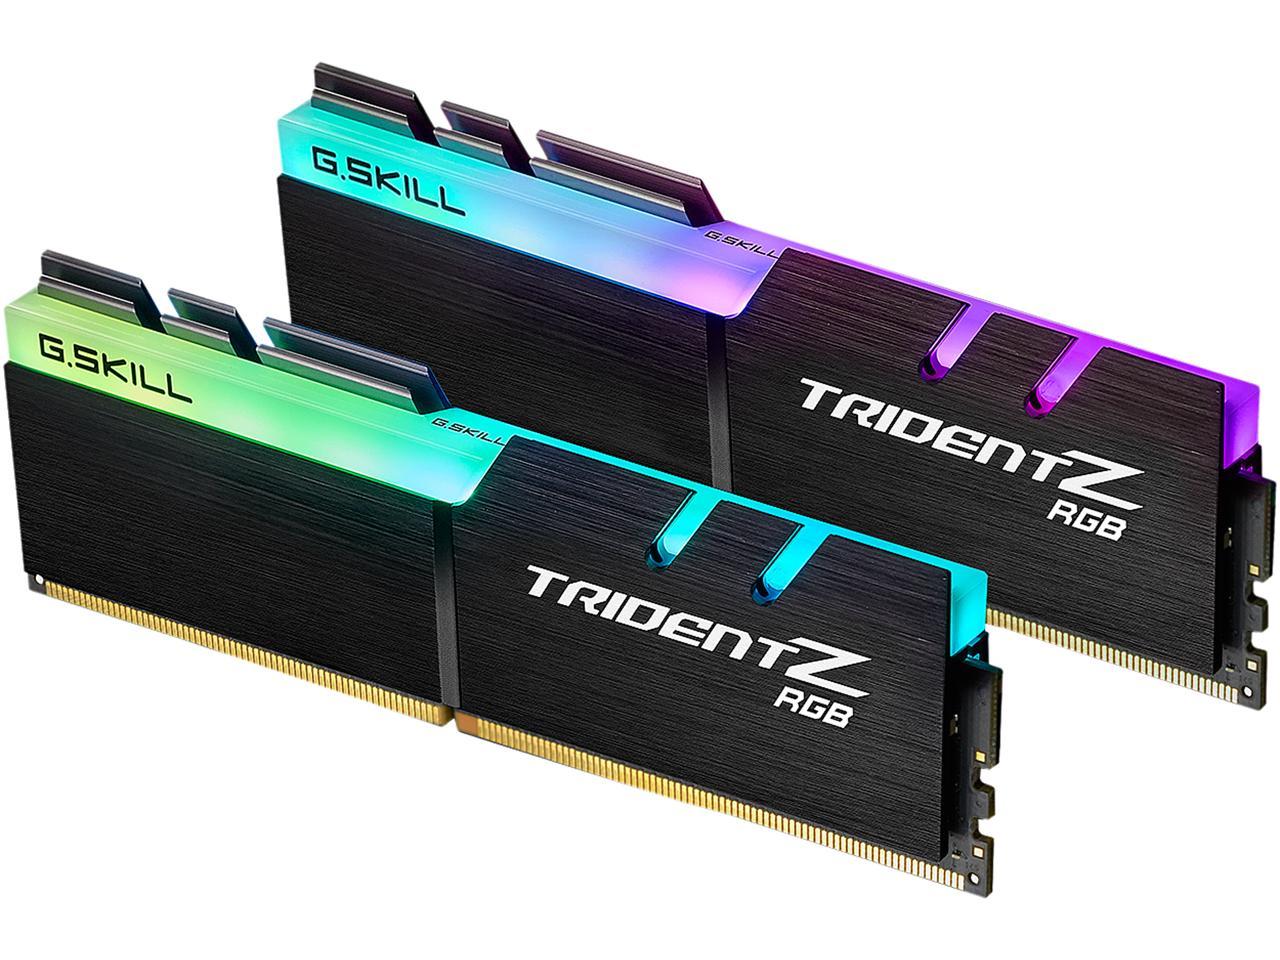 G.SKILL TridentZ RGB Series 16GB (2 x 8GB) 288-Pin PC RAM DDR4 